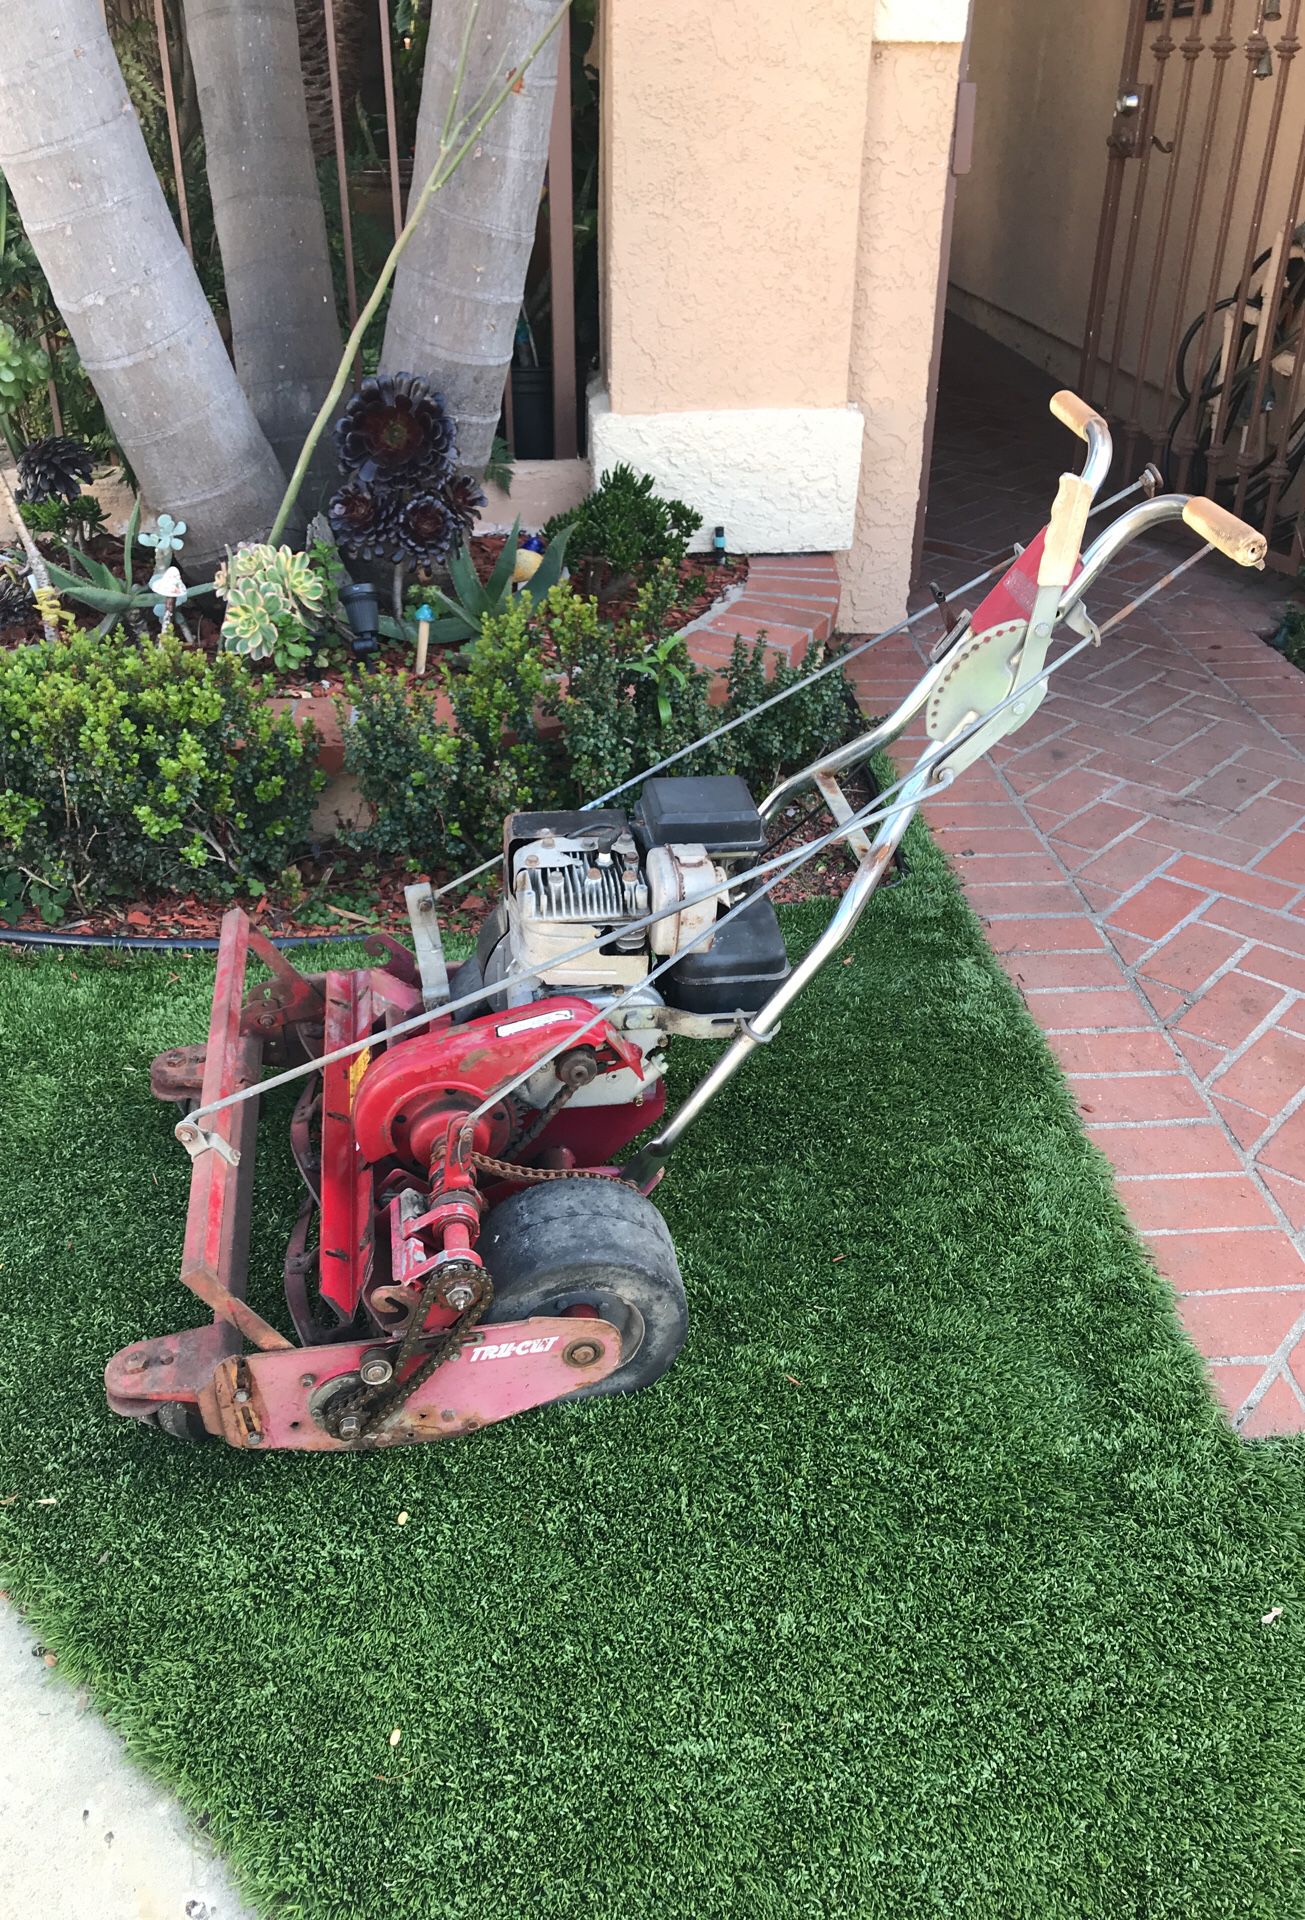 Tru cut reel mower for Sale in Laguna Hills, CA - OfferUp